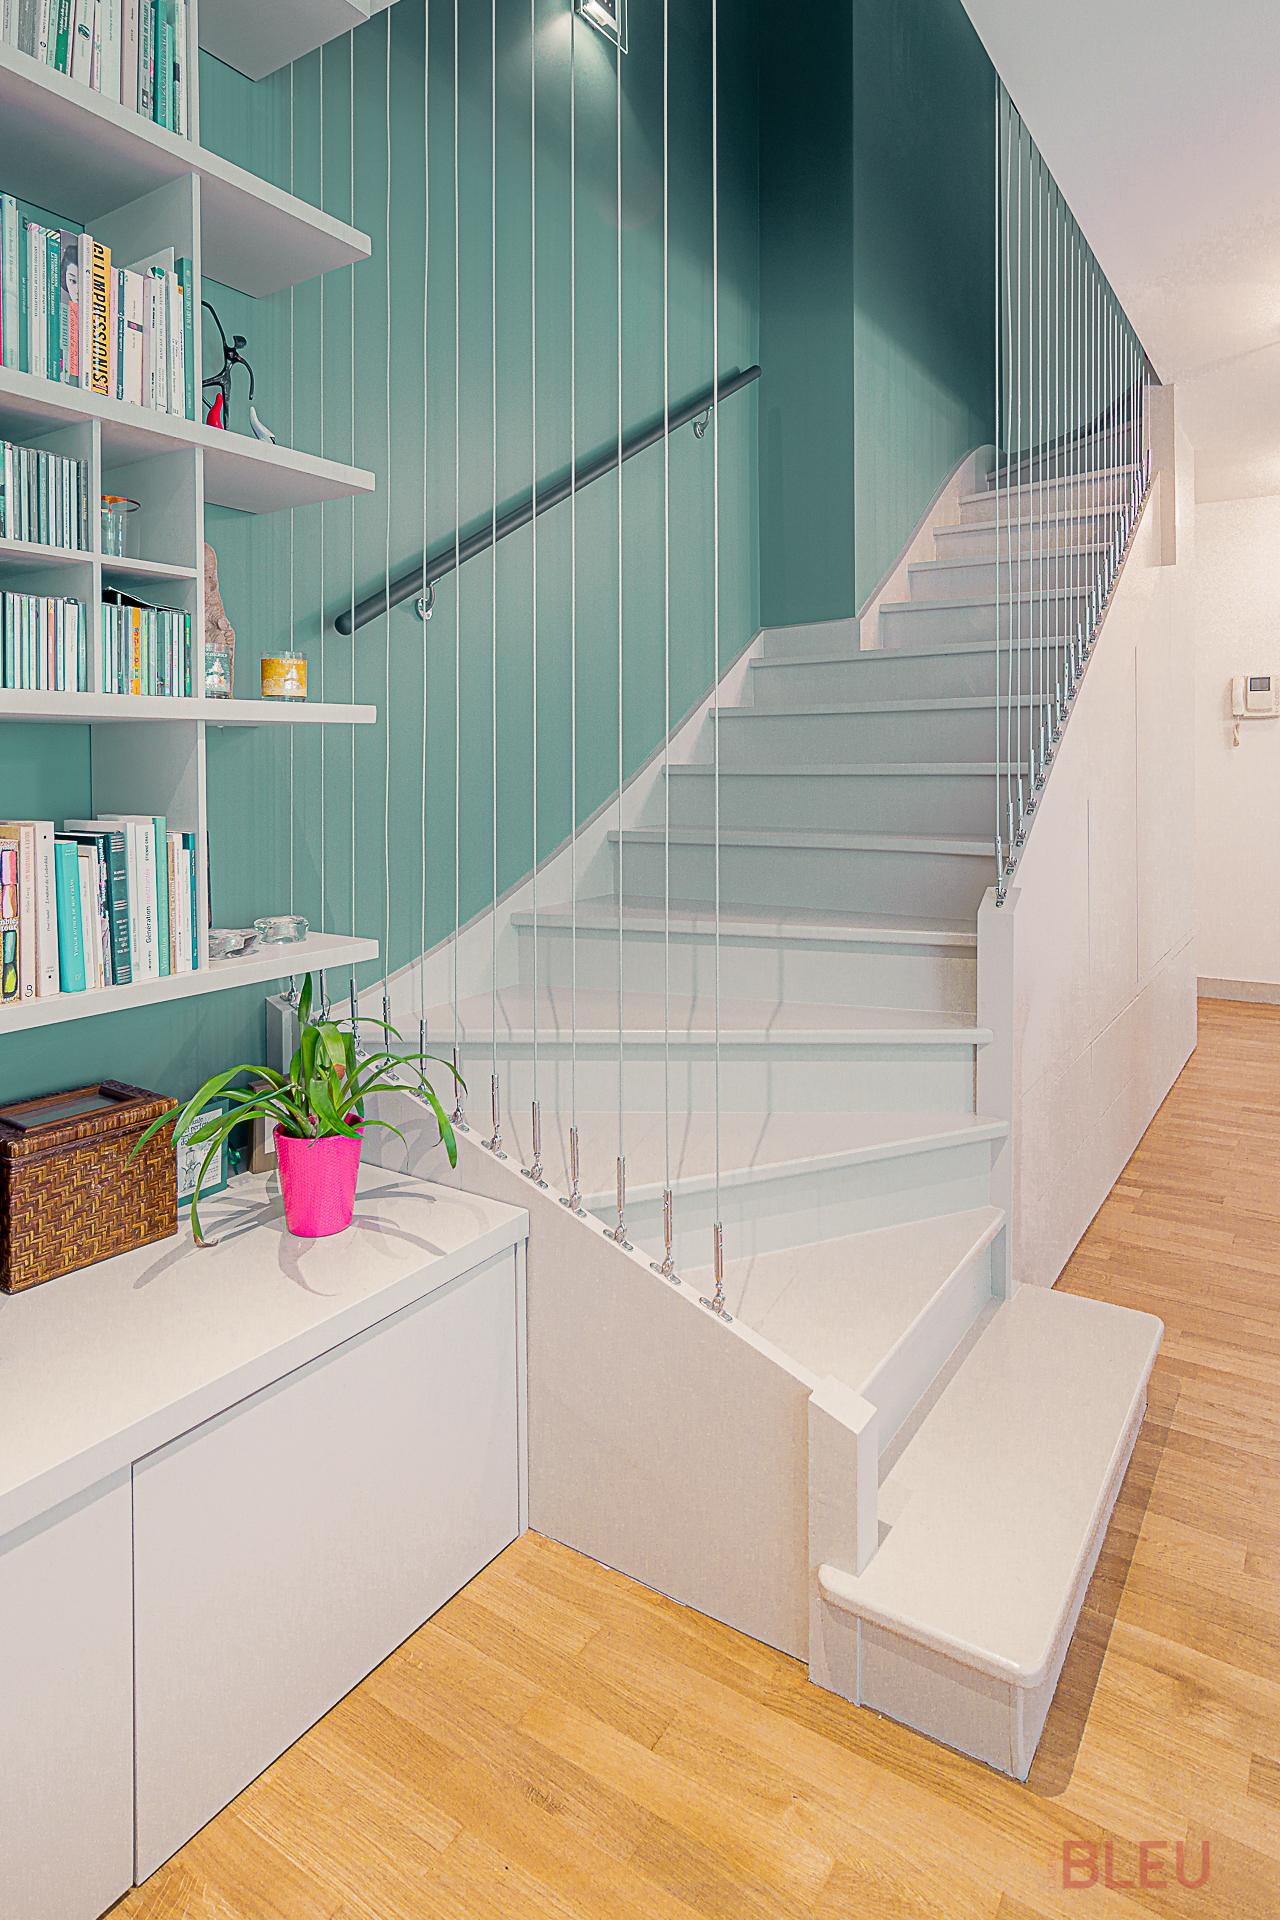 Espace intérieur moderne avec escalier distinctif et bibliothèque intégrée dans un duplex parisien, conçu par un architecte d'intérieur.